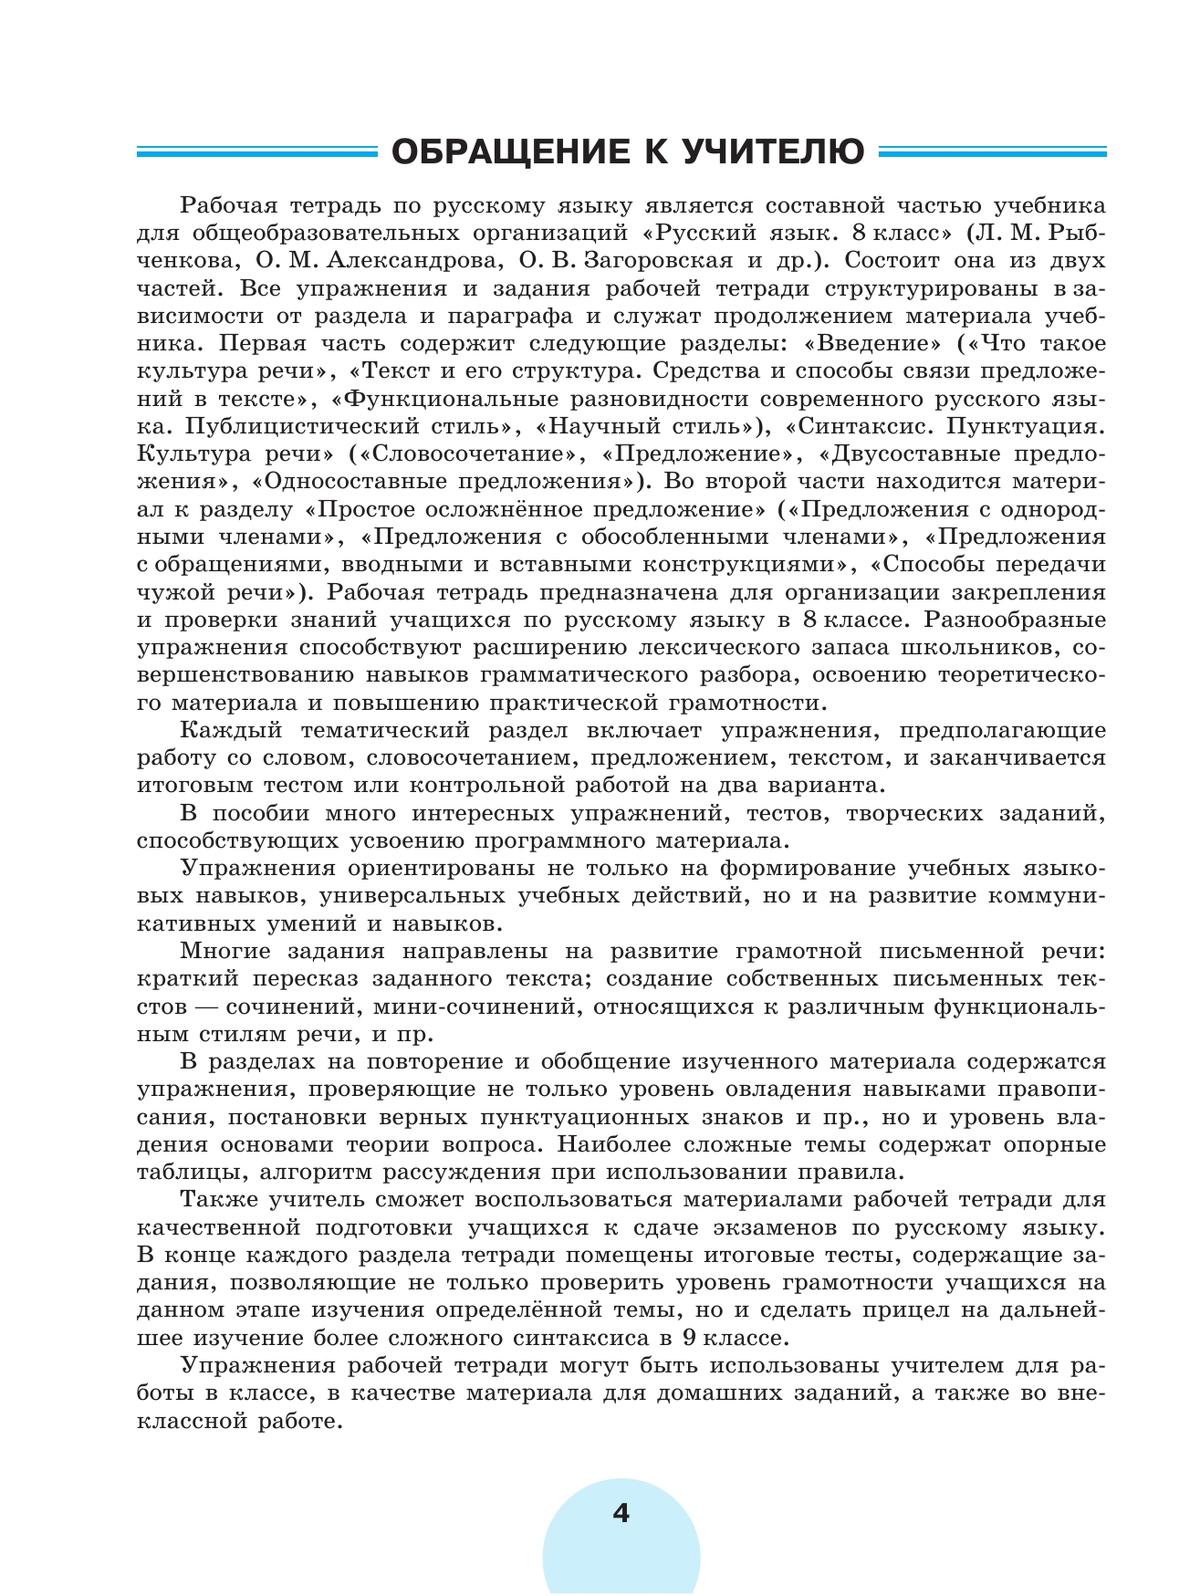 Русский язык. Рабочая тетрадь. 8 класс. В 2 ч. Часть 1 3